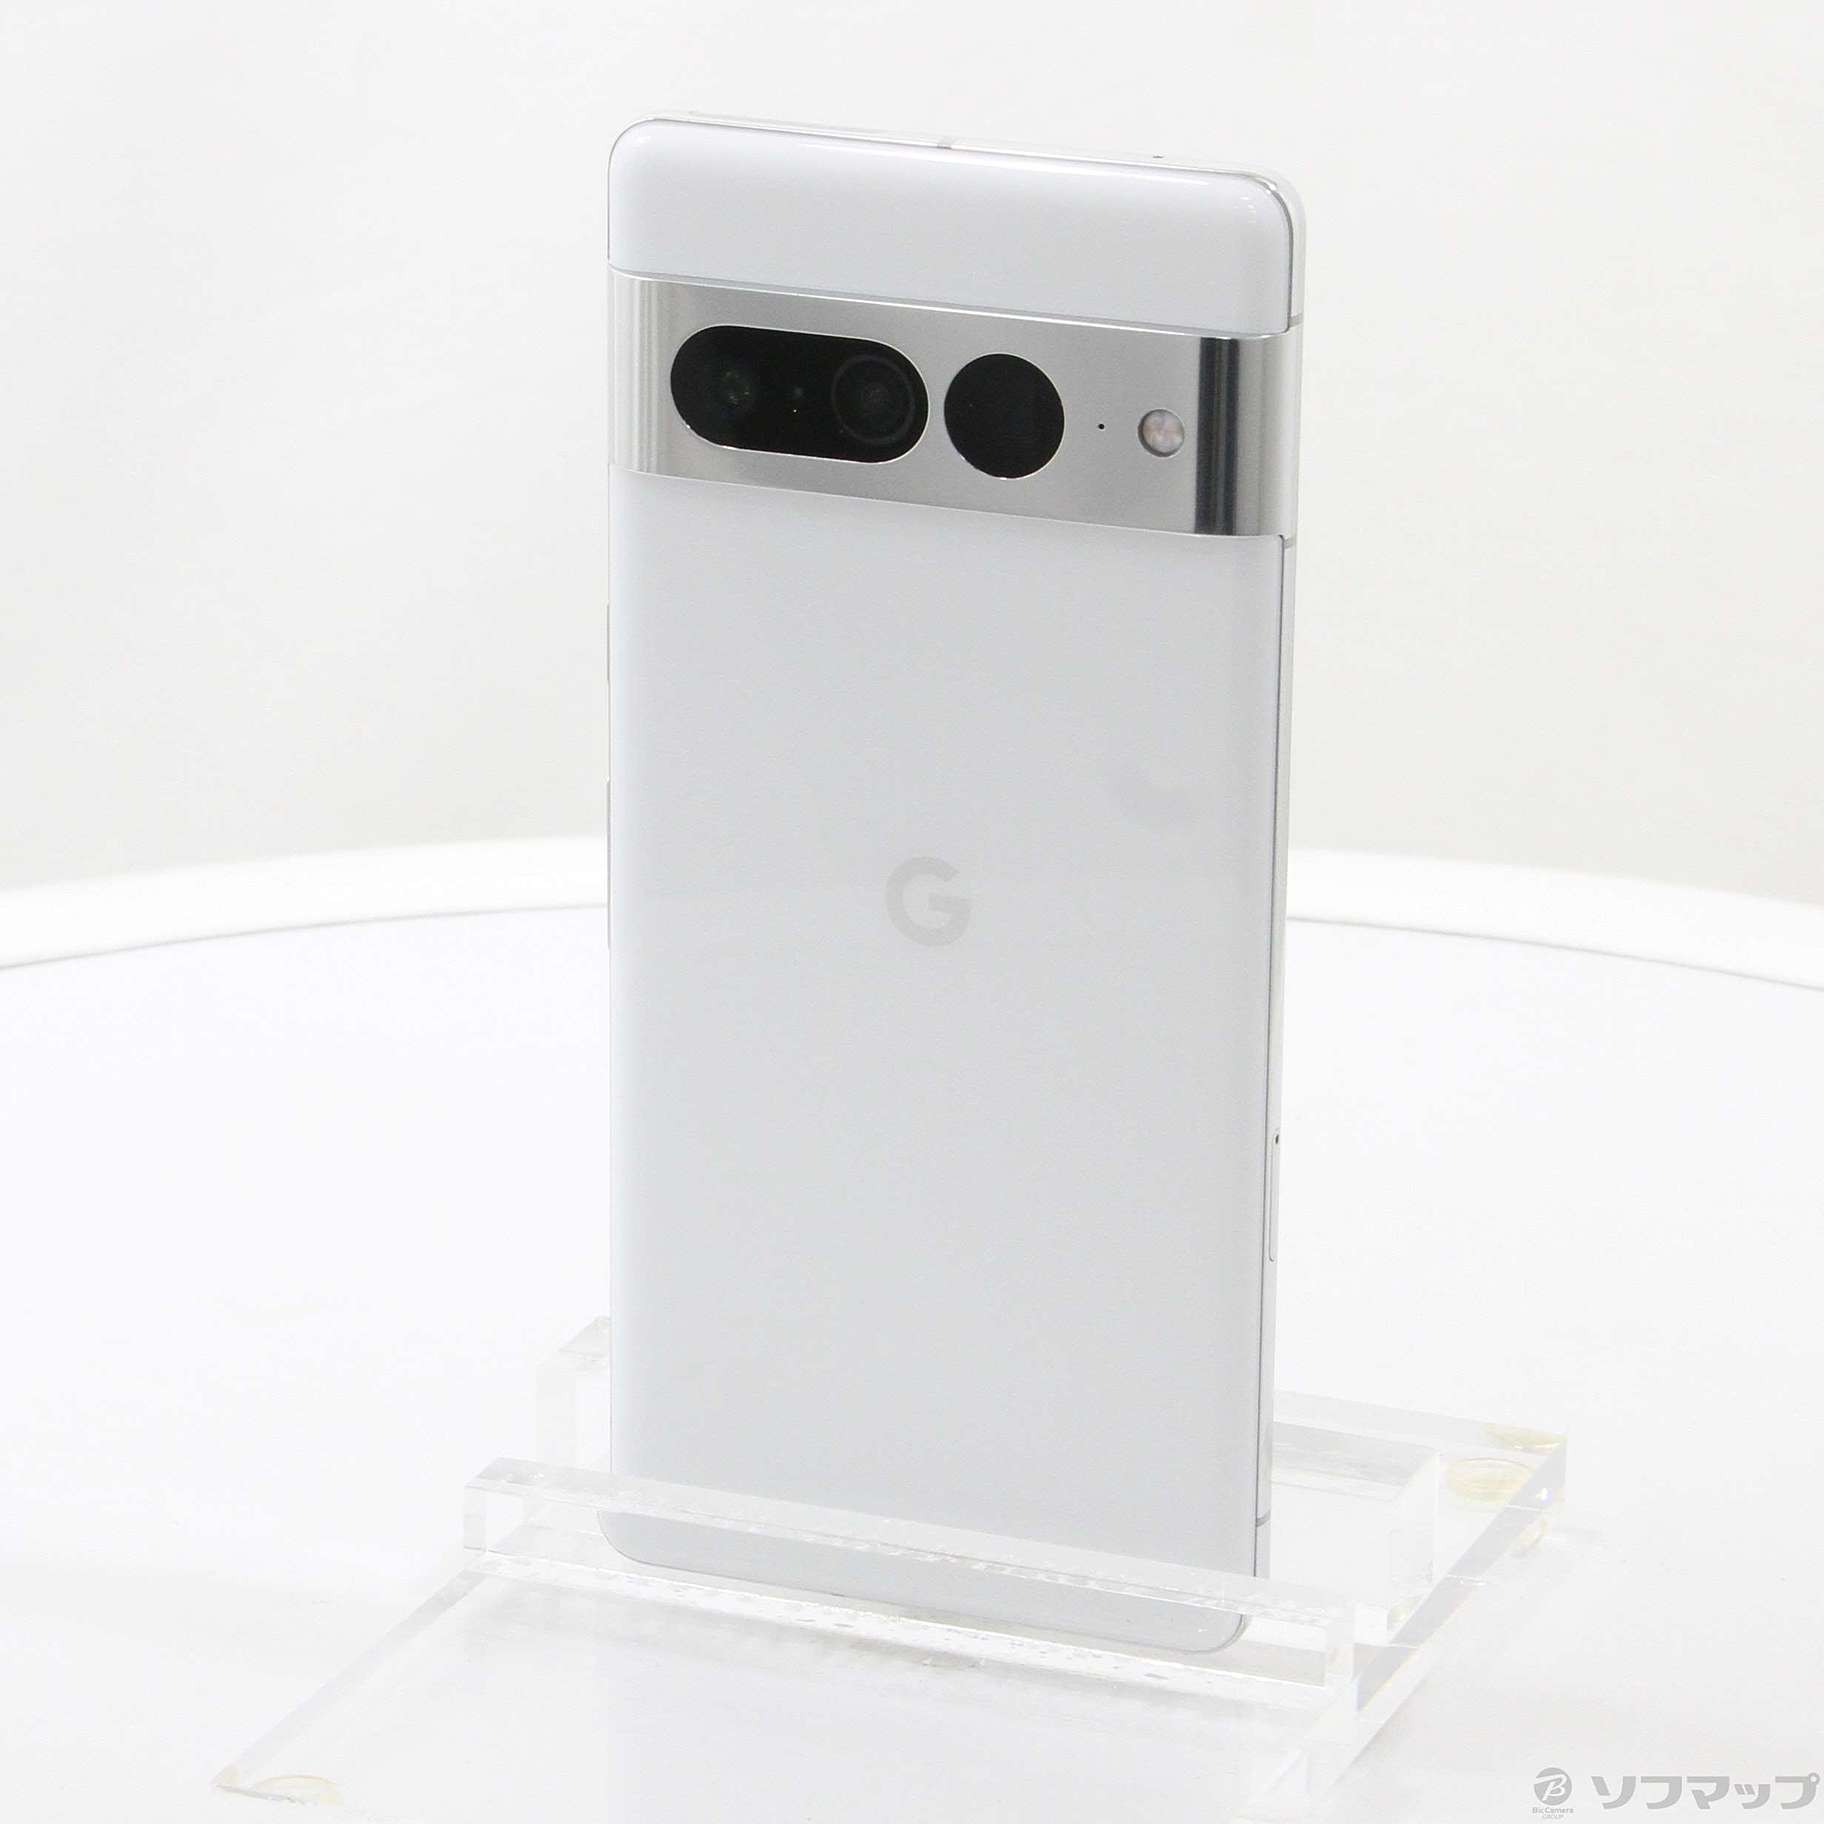 【新品未開封】Google Pixel 7 Snow 白 ホワイト 128 GB